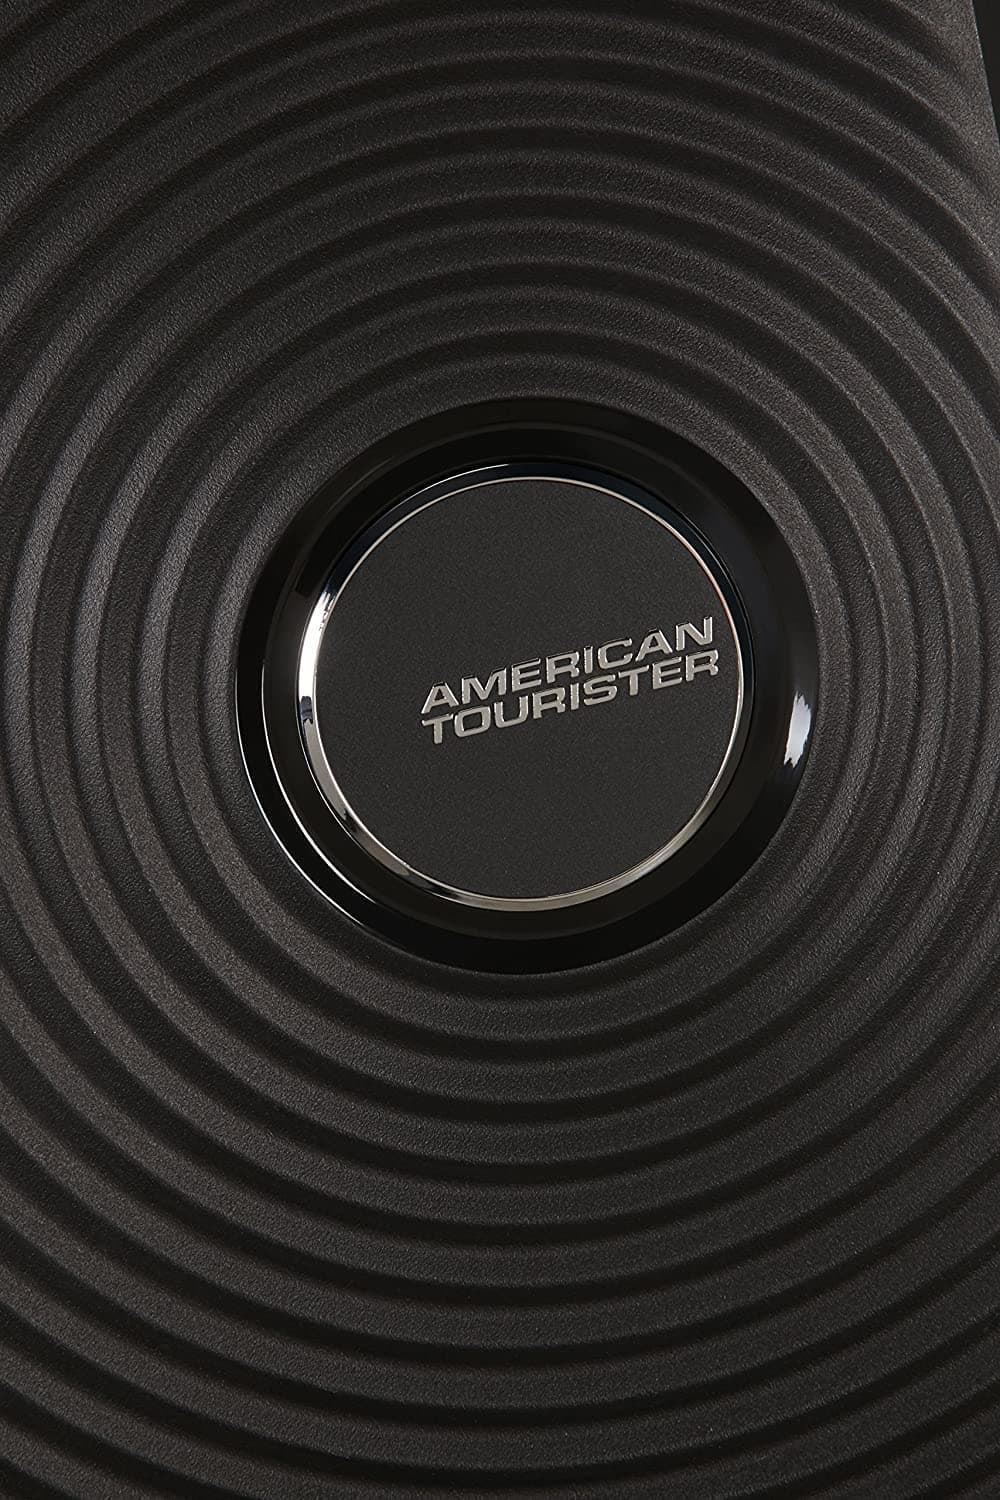 American Tourister Soundbox maleta cabina expandible negro 3 años de Garantía - Imagen 9